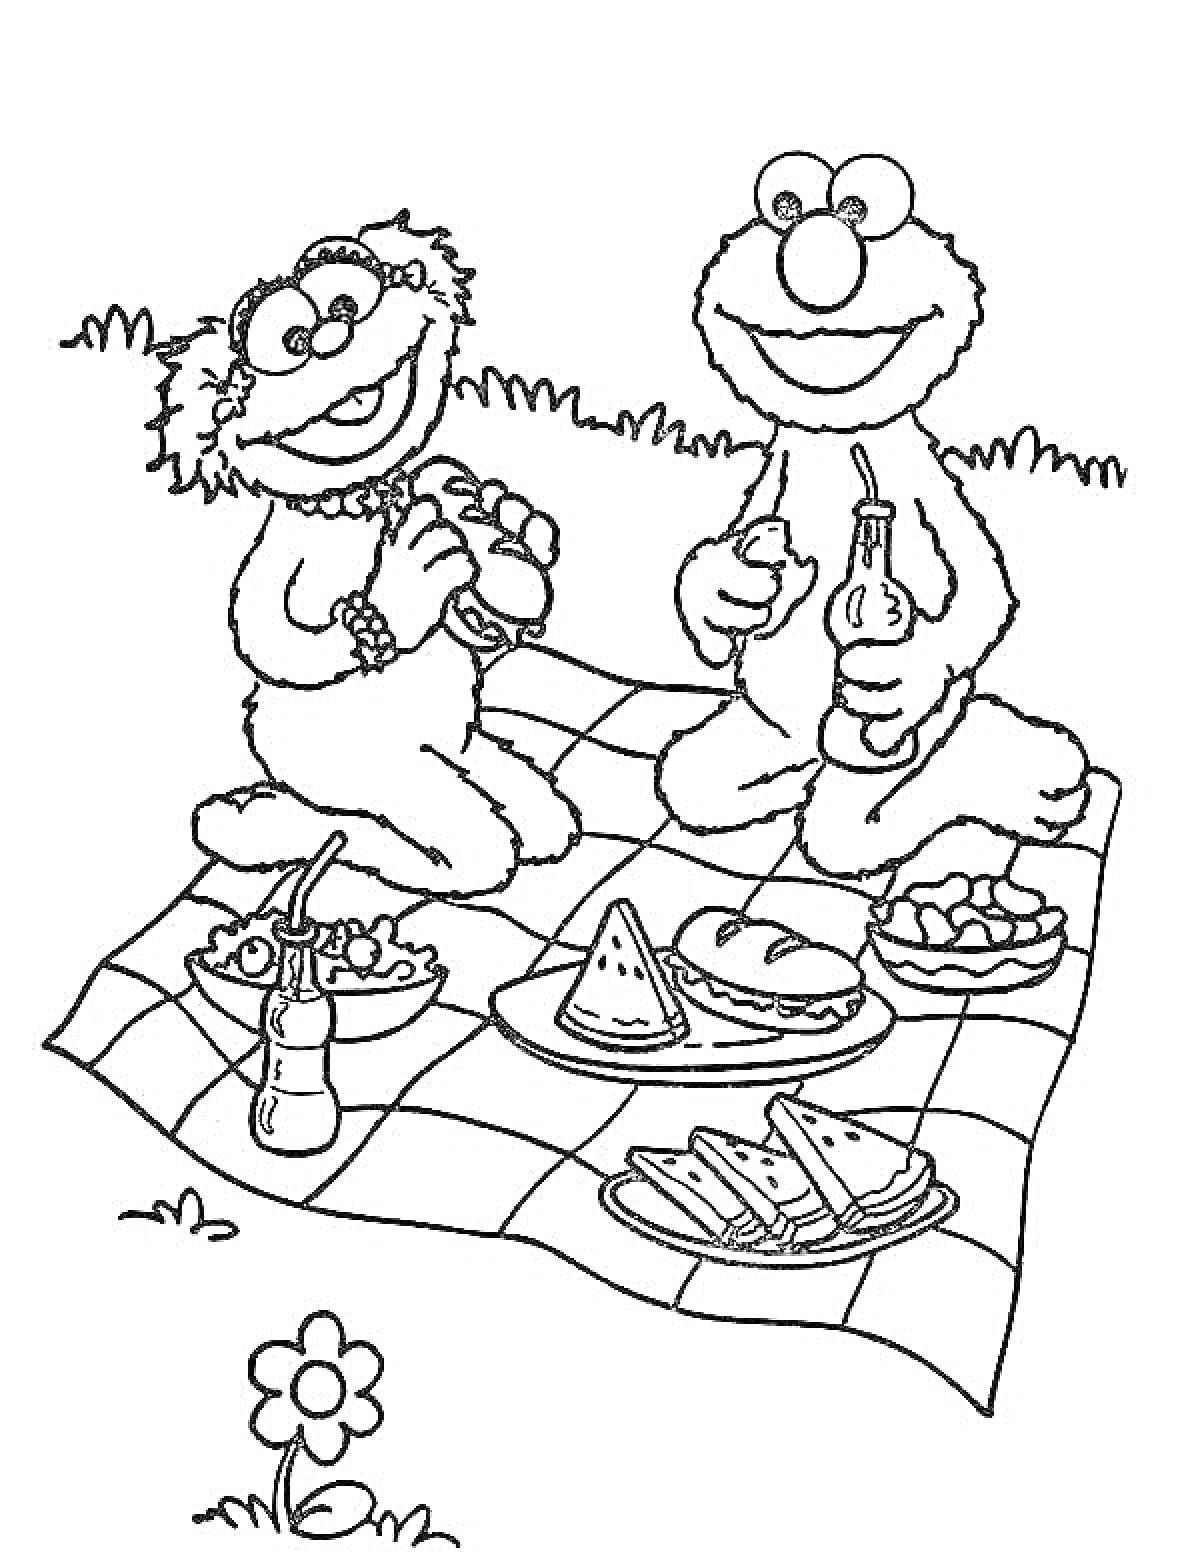 Раскраска Два персонажа на пикнике с едой на покрывале